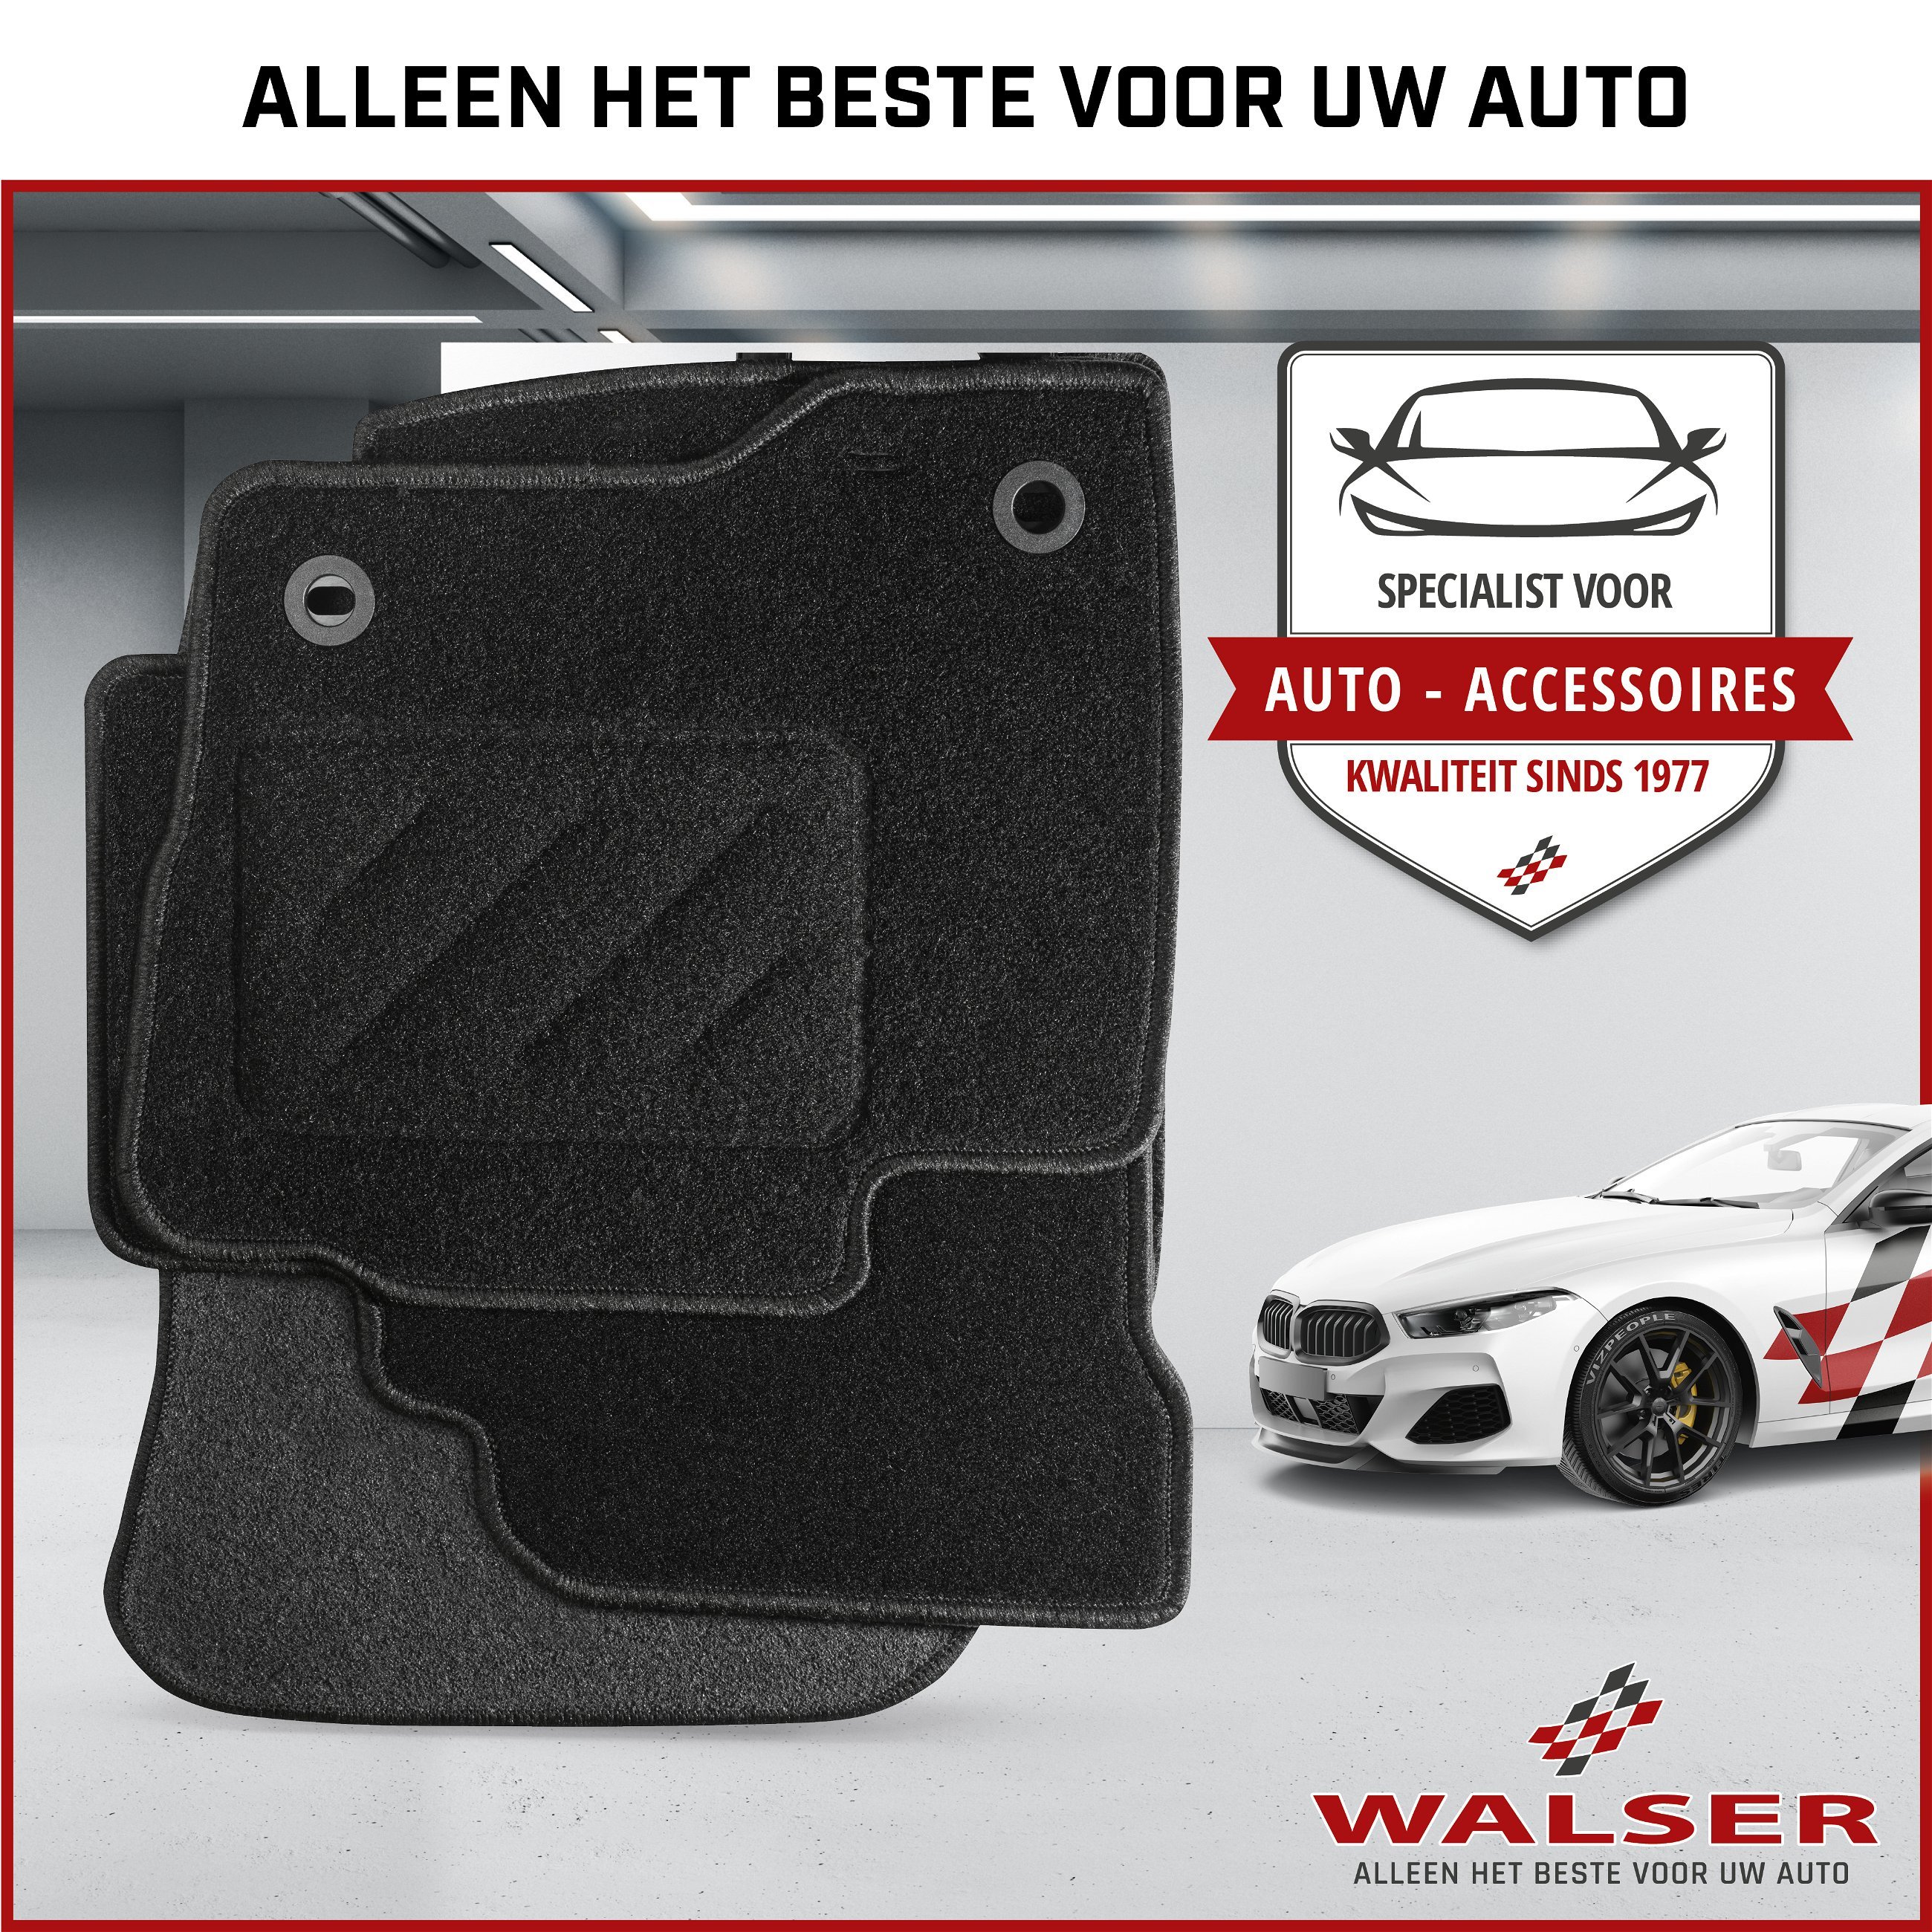 Naaldvilt Velours voetmatten geschikt voor Opel Astra H 01/2004-05/2014, Astra H Caravan 08/2004-05/2014, Astra H GTC 03/2005-10/2010